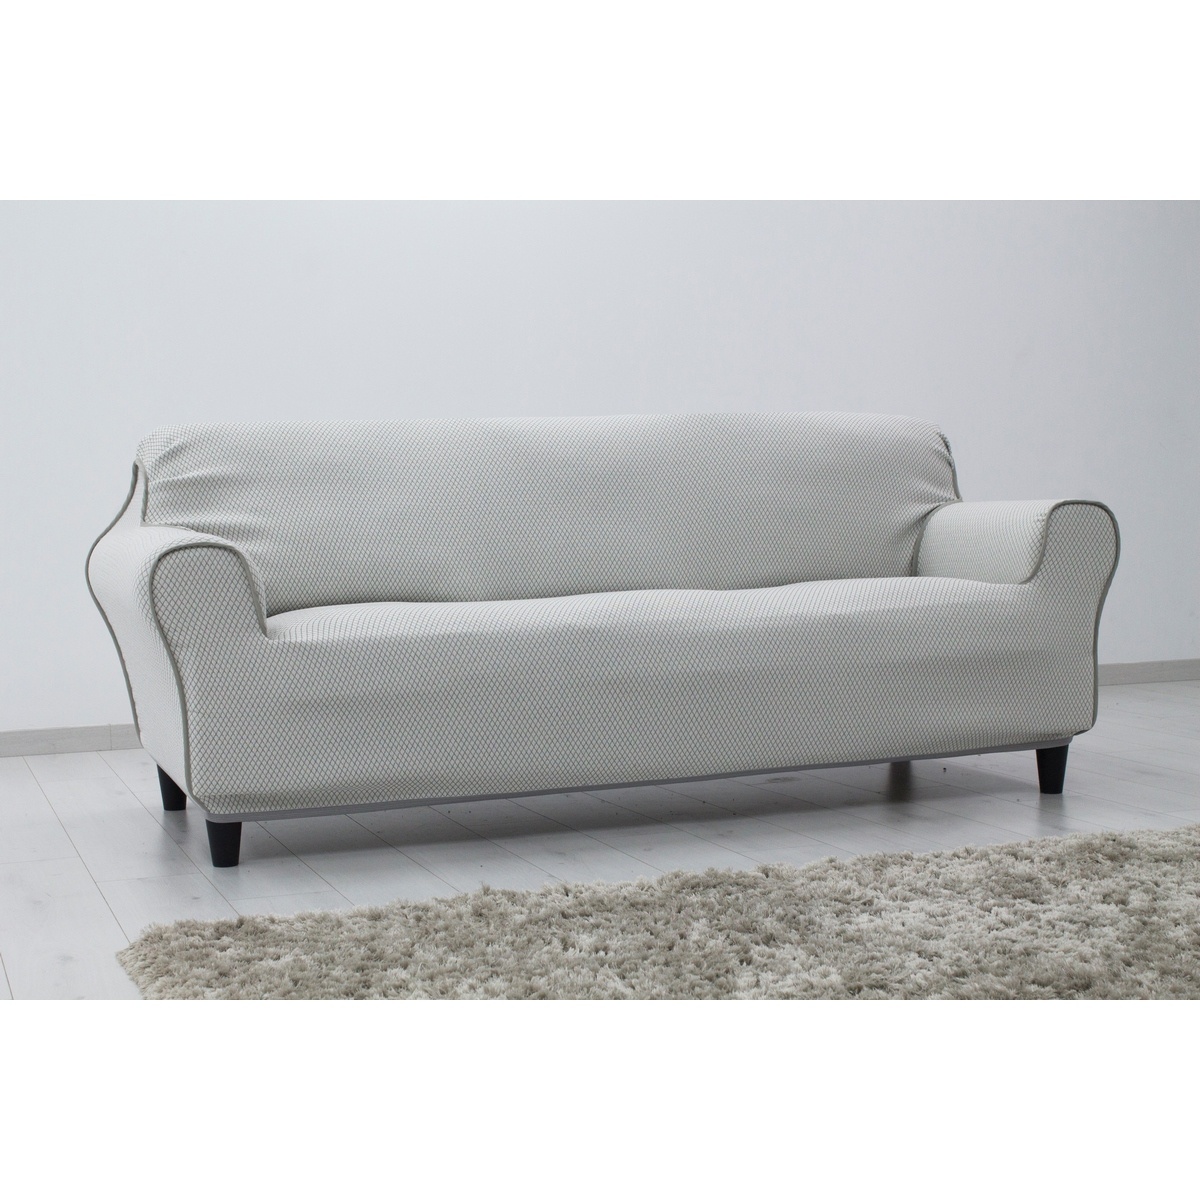 IRPIN multielasztikus kanapéhuzat szürke, 140-180 cm, 140 - 180 cm